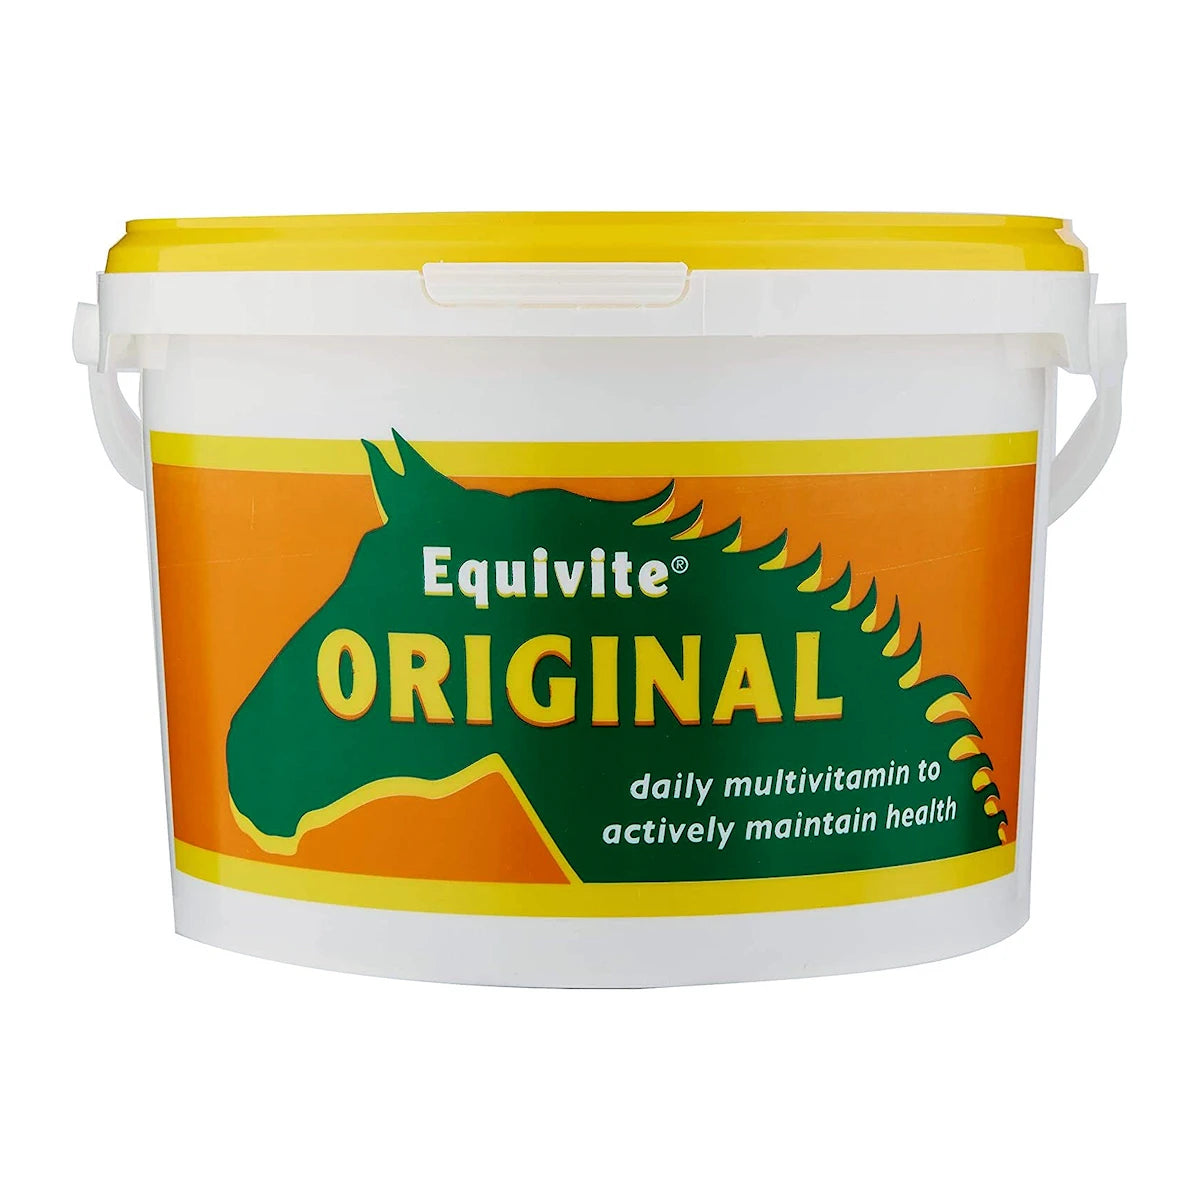 Equivite Original Horse Supplement - 3Kg